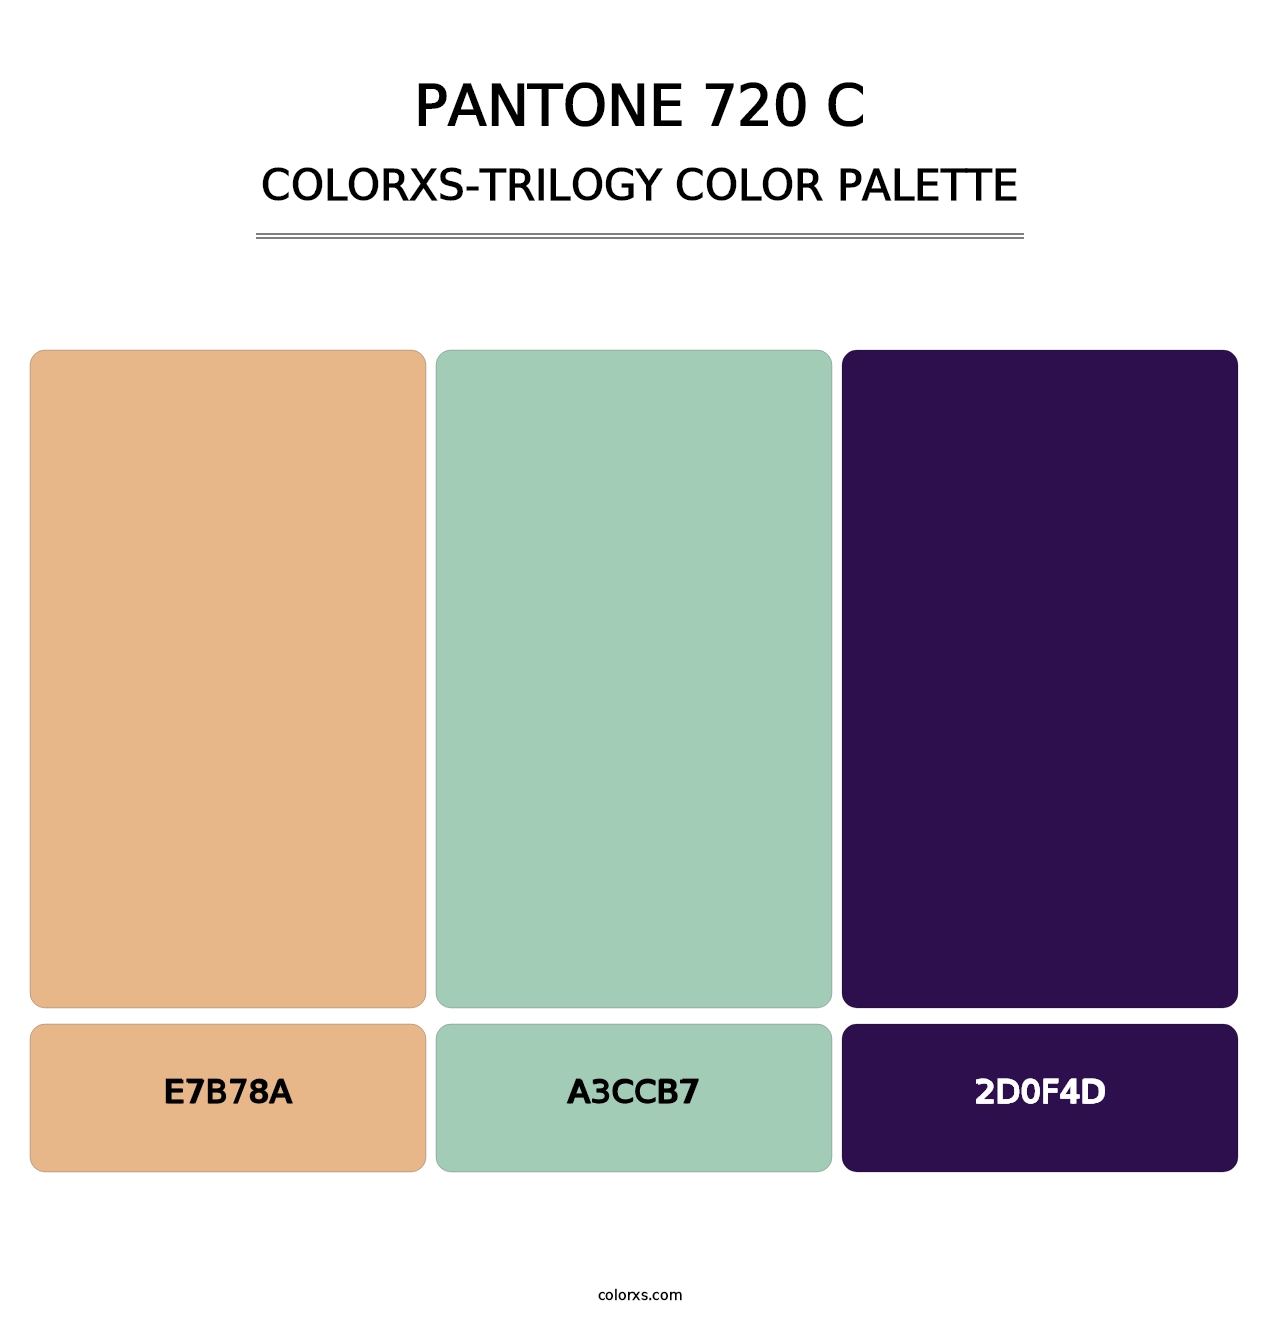 PANTONE 720 C - Colorxs Trilogy Palette